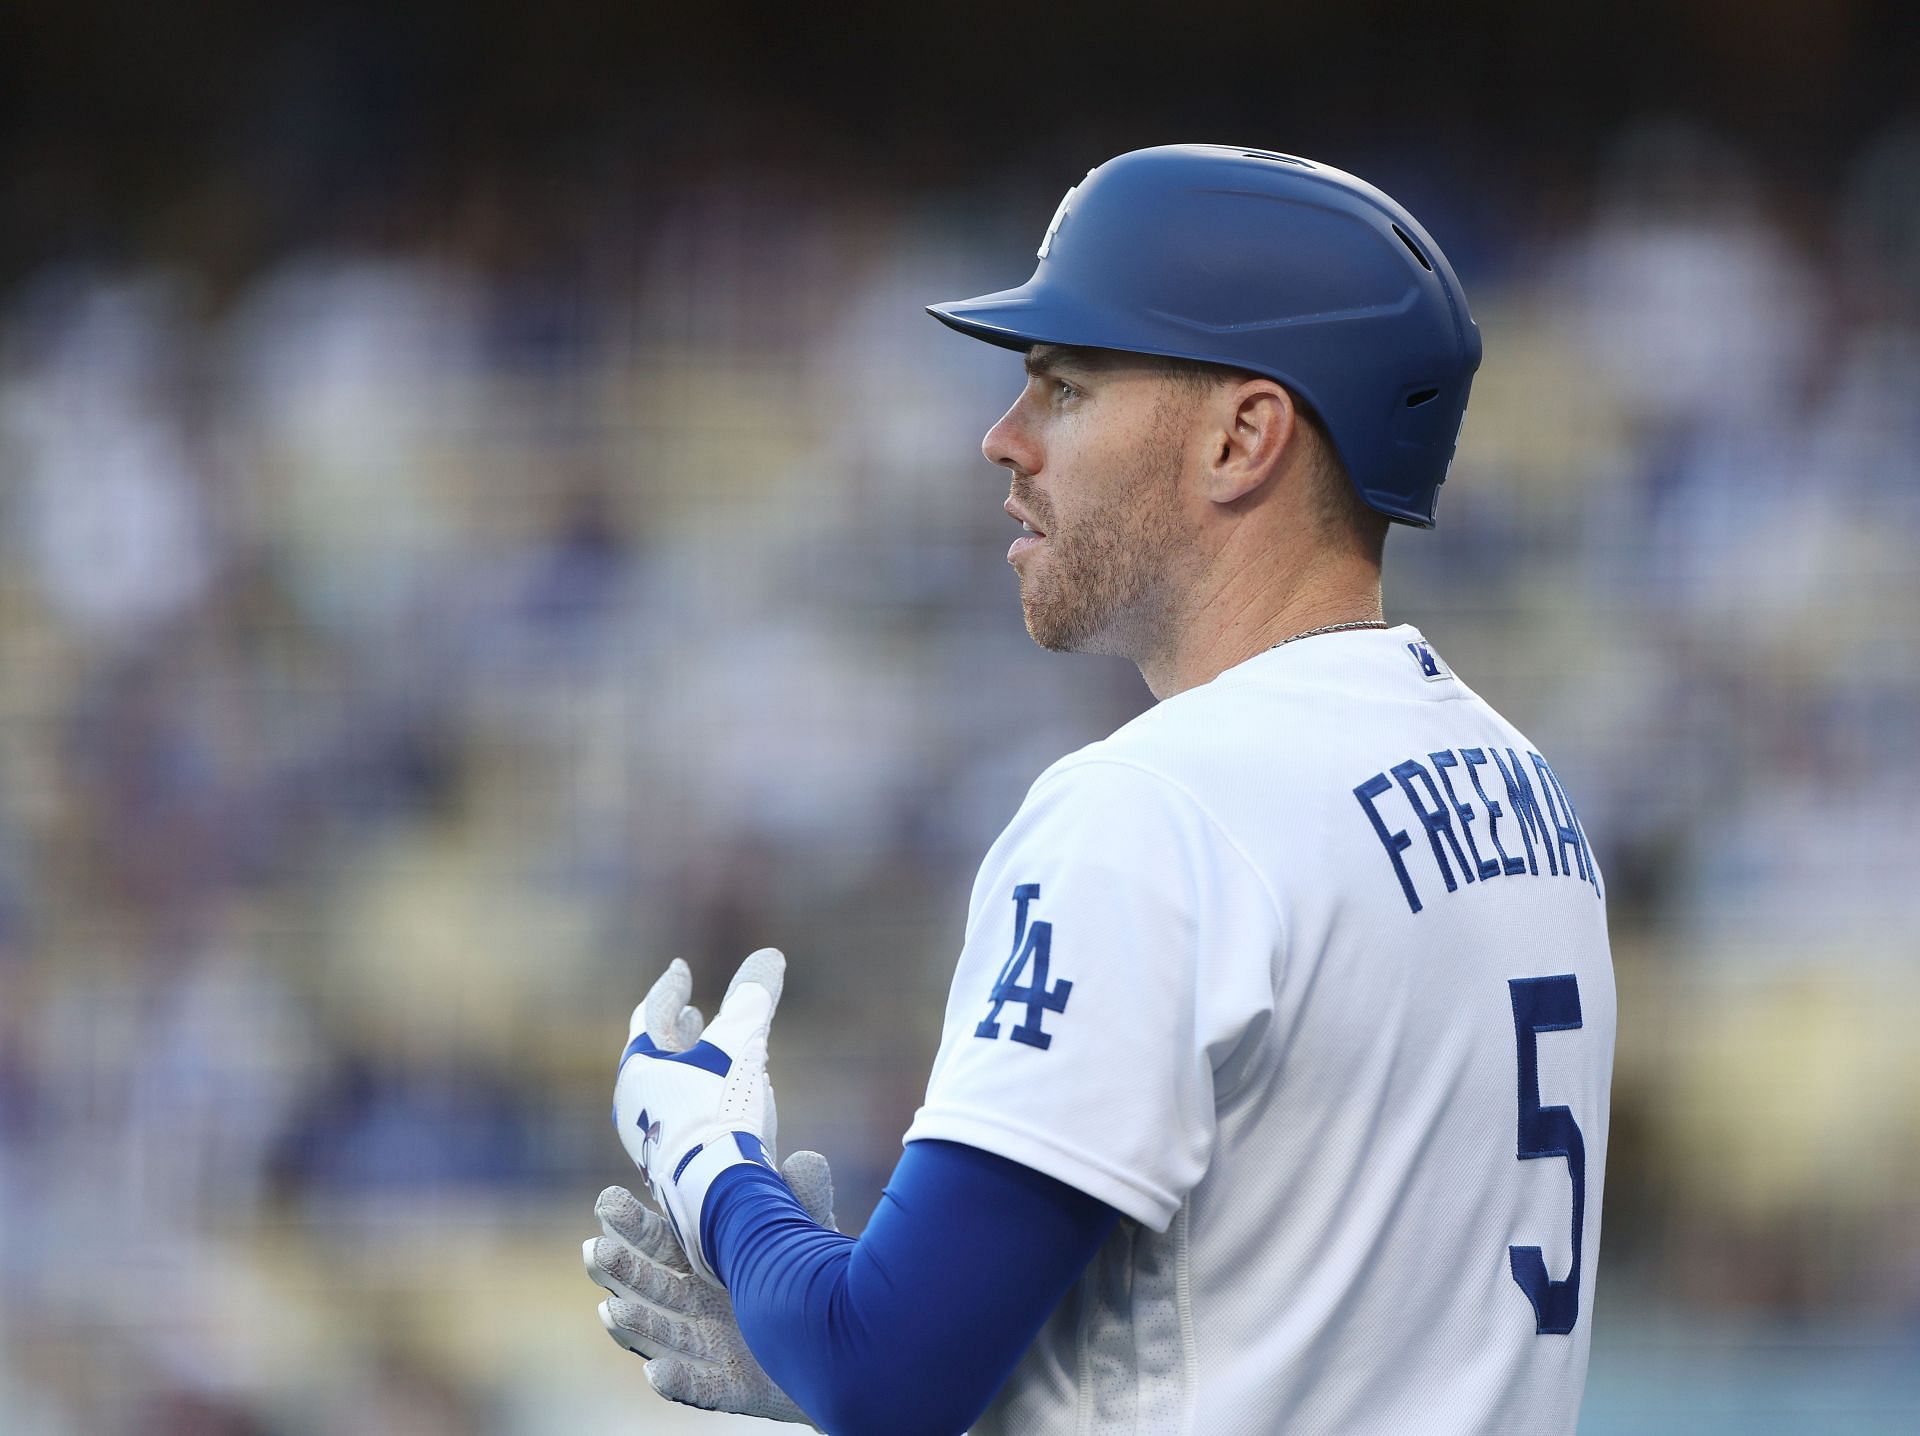 Dodgers superstar Freddie Freeman celebrates his 8th wedding